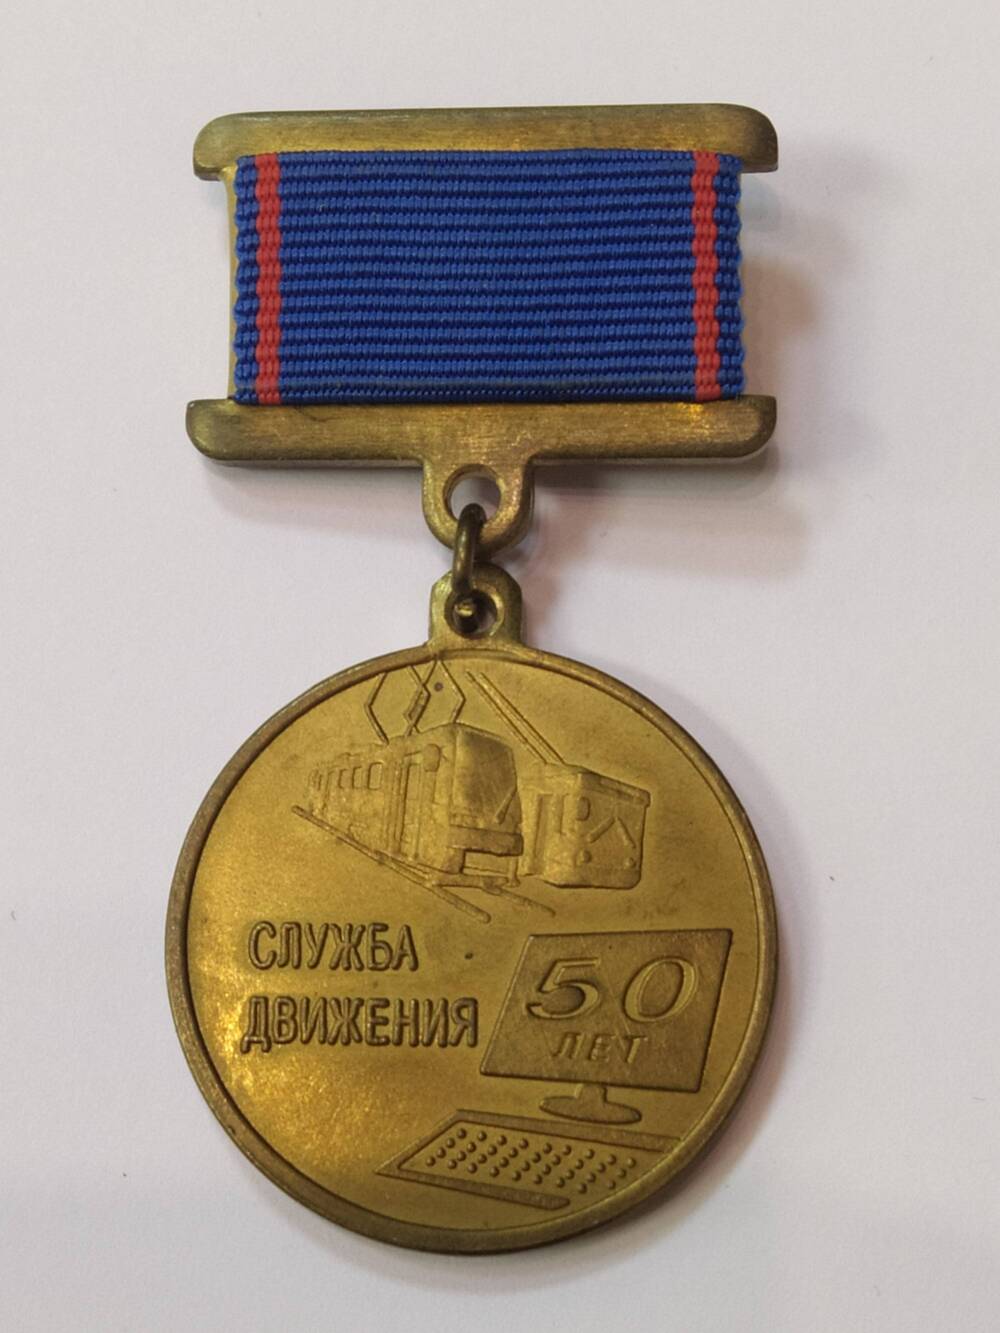 Медаль Служба движения 50 лет